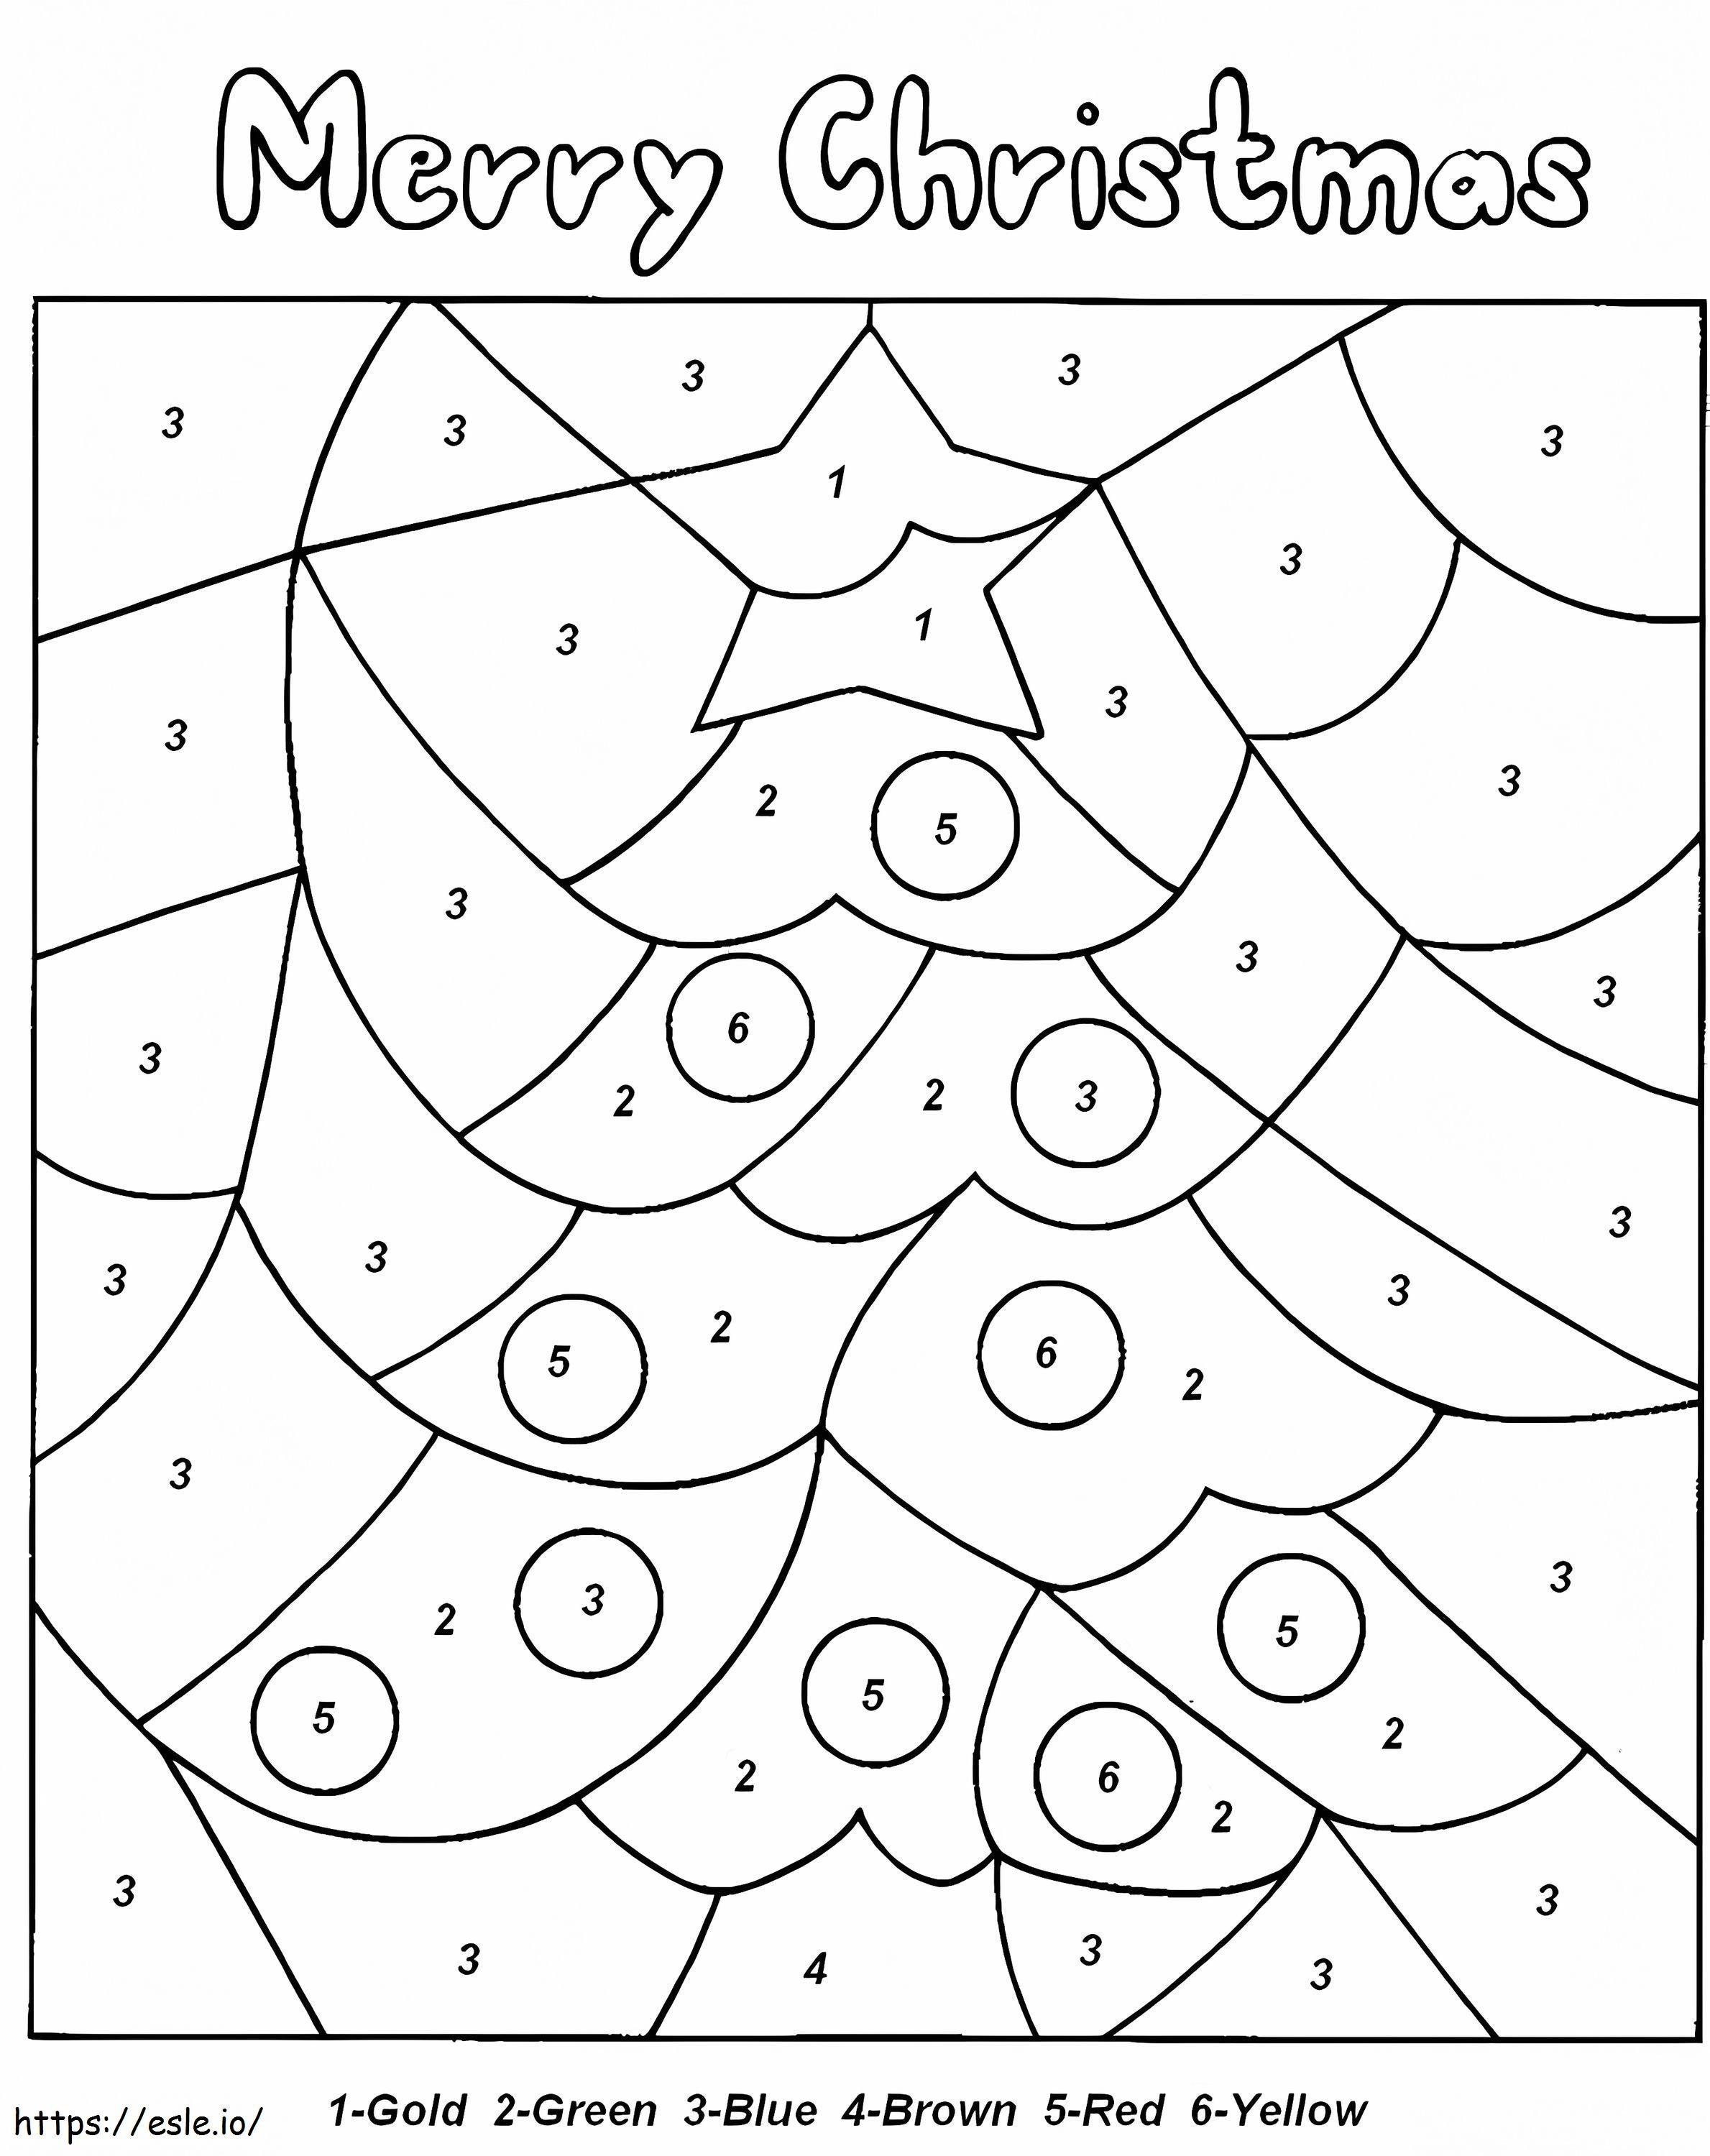  Cor de Natal por Números Árvore de Natal 001 para colorir